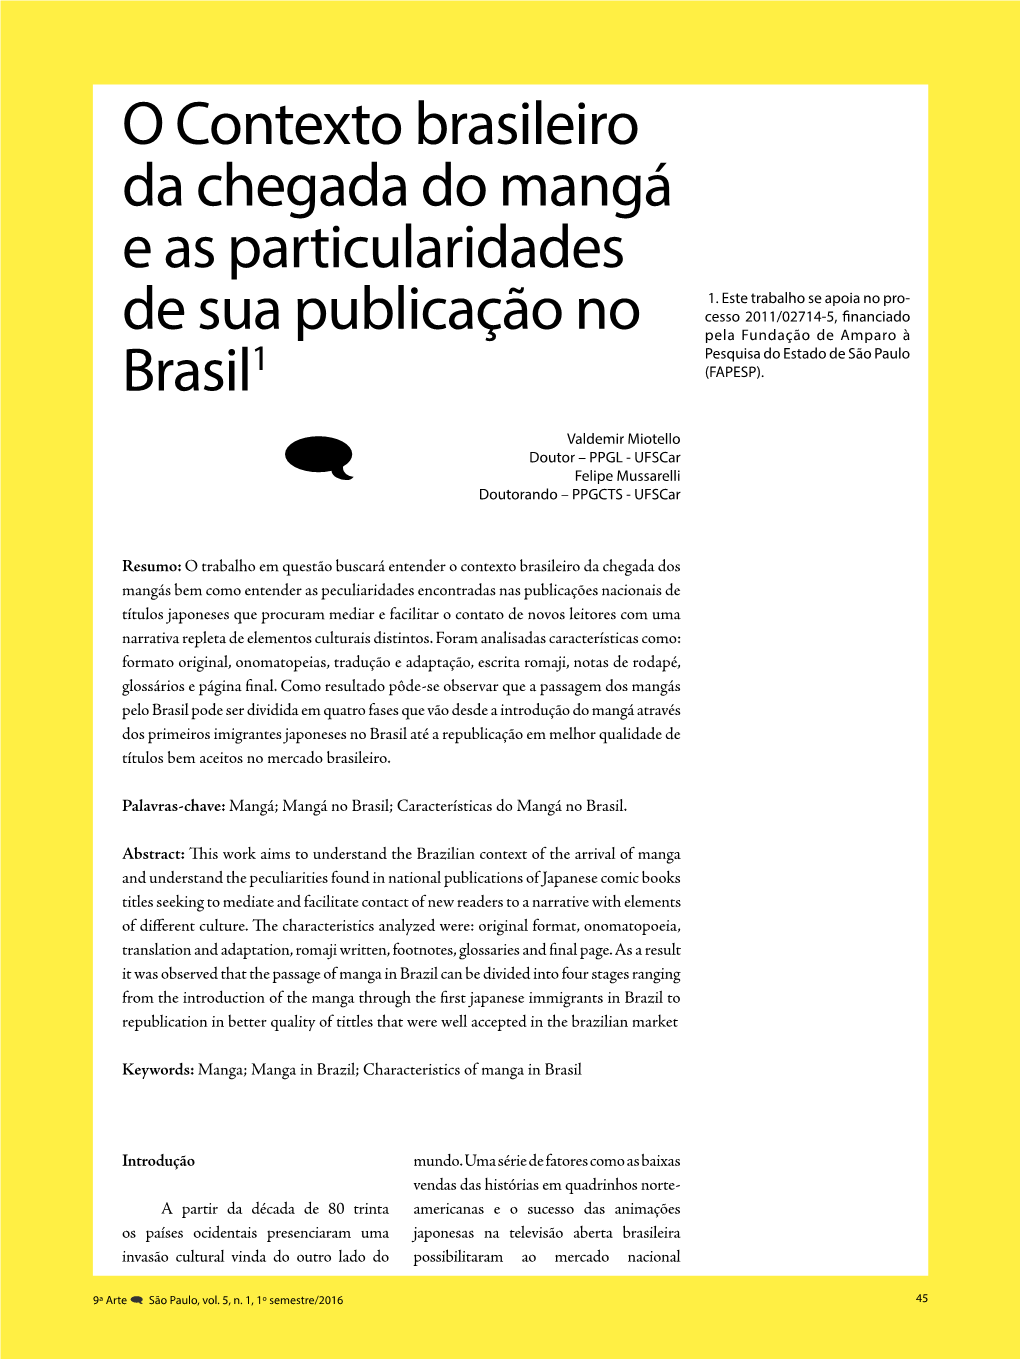 O Contexto Brasileiro Da Chegada Do Mangá E As Particularidades De Sua